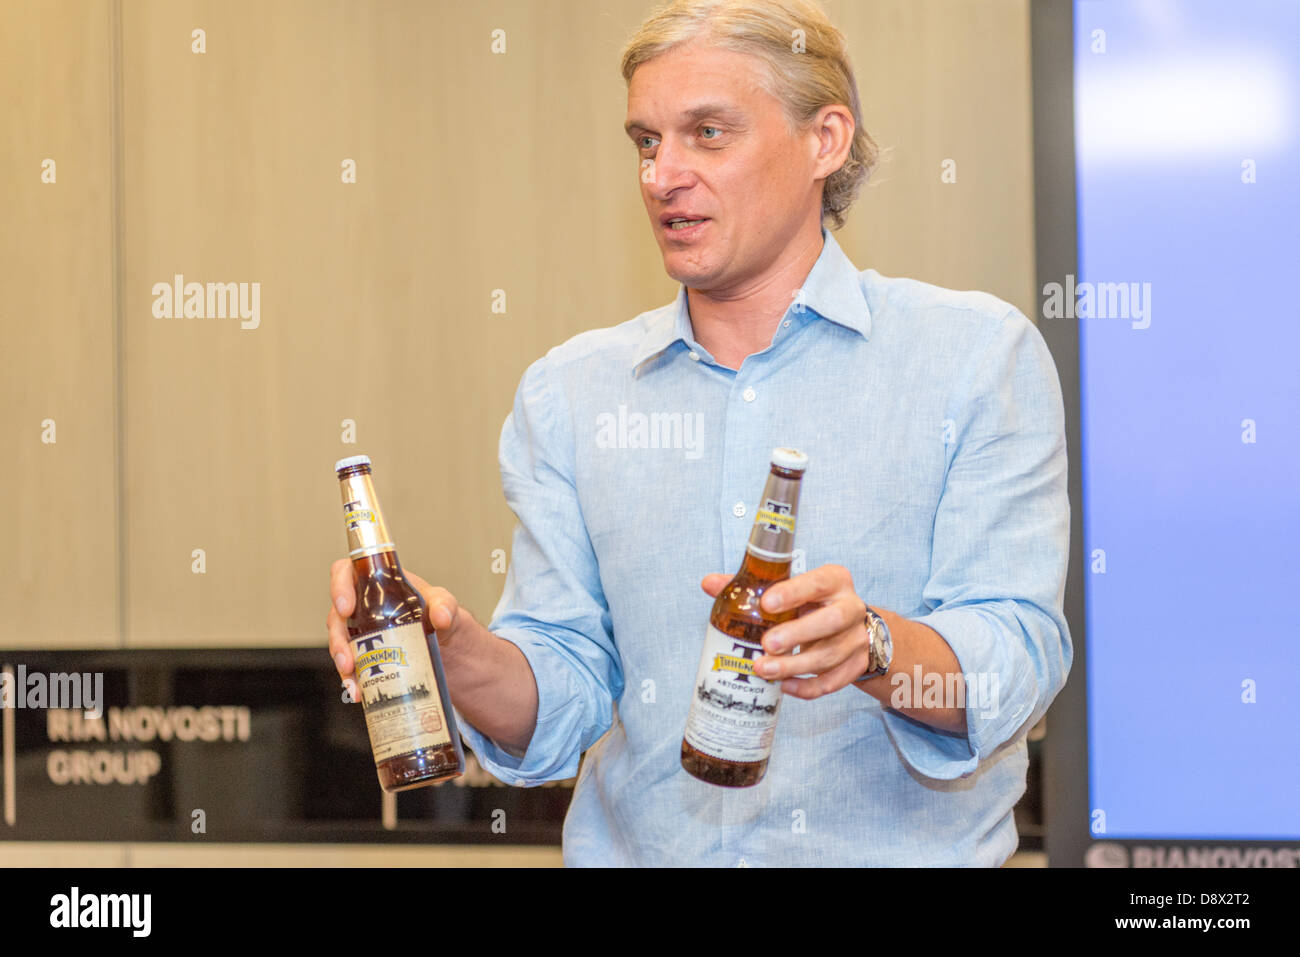 Moscou, Russie. 5 juin, 2013. Oleg Tinkov, conférence de presse à propos de son amour et passion - nouvelle bière Tinkoff. Moscou, le 5 juin 2013 : Crédit d'Alyaksandr Stzhalkouski/Alamy Live News Banque D'Images